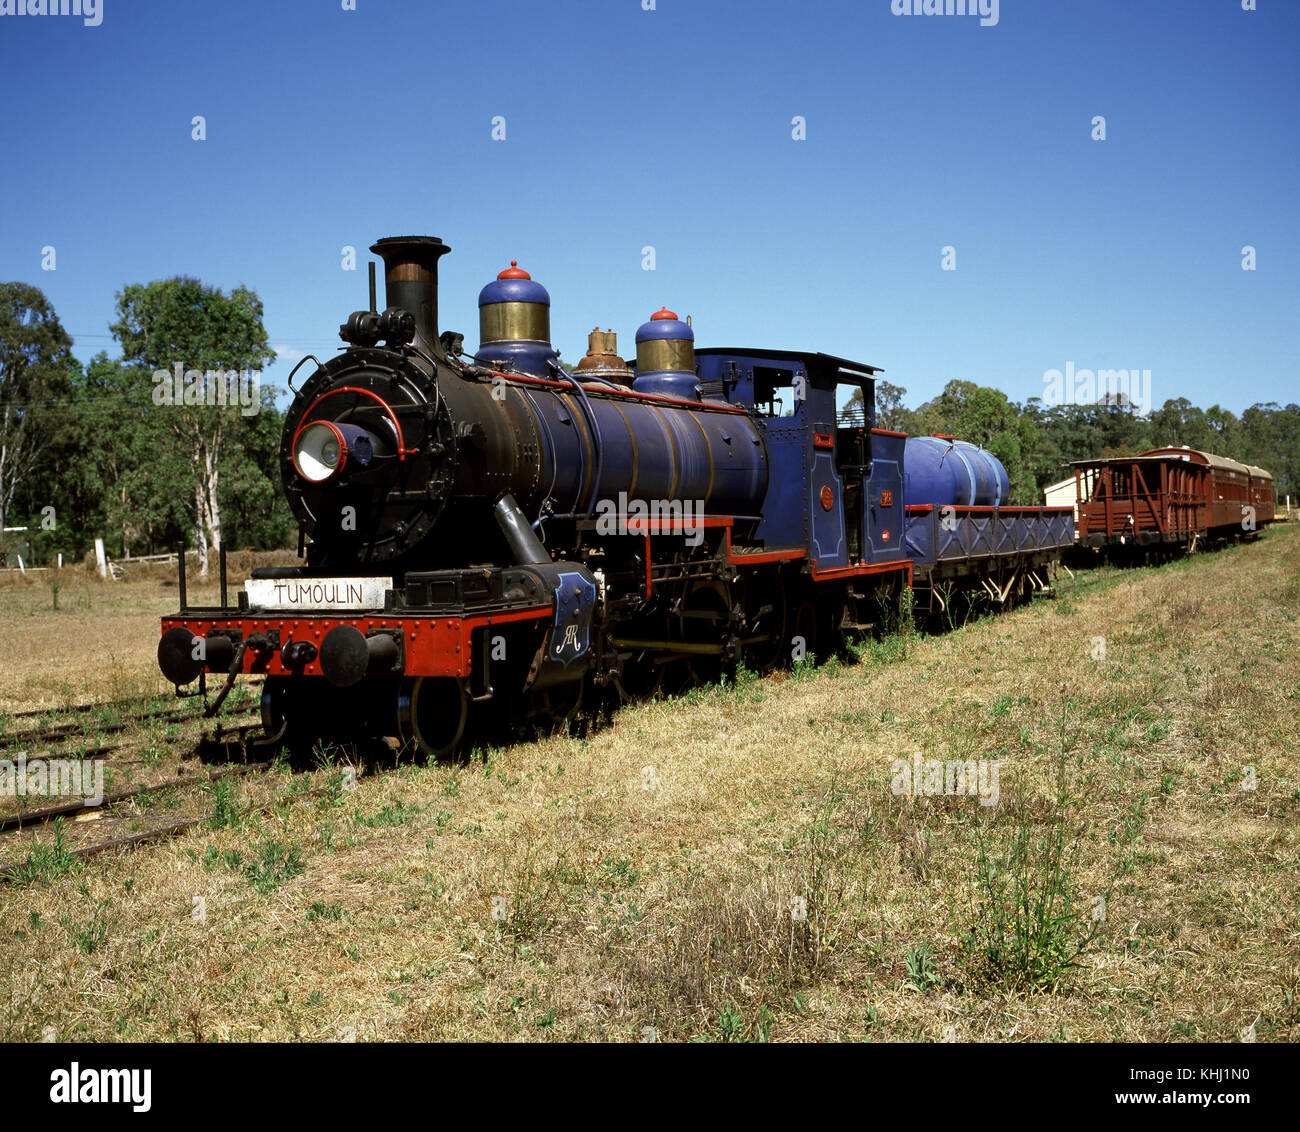 Train à vapeur, une locomotive restaurée entre Ravenshoe et Tumoulin. Ravenshoe, Queensland, Australie Banque D'Images